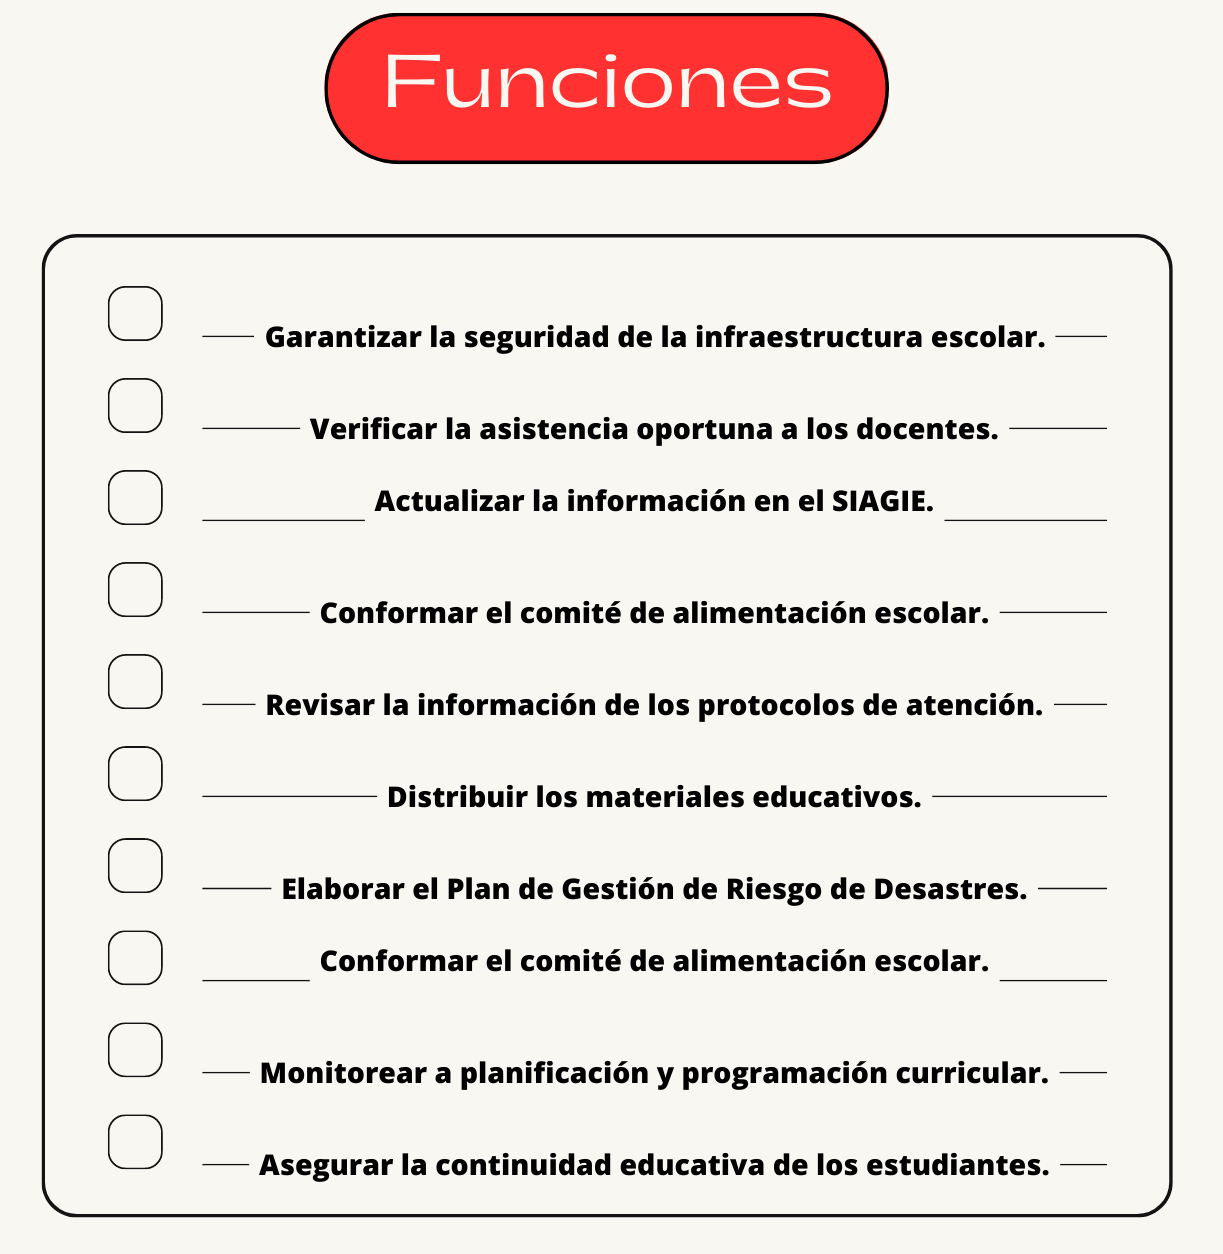 Funciones director escolar perú